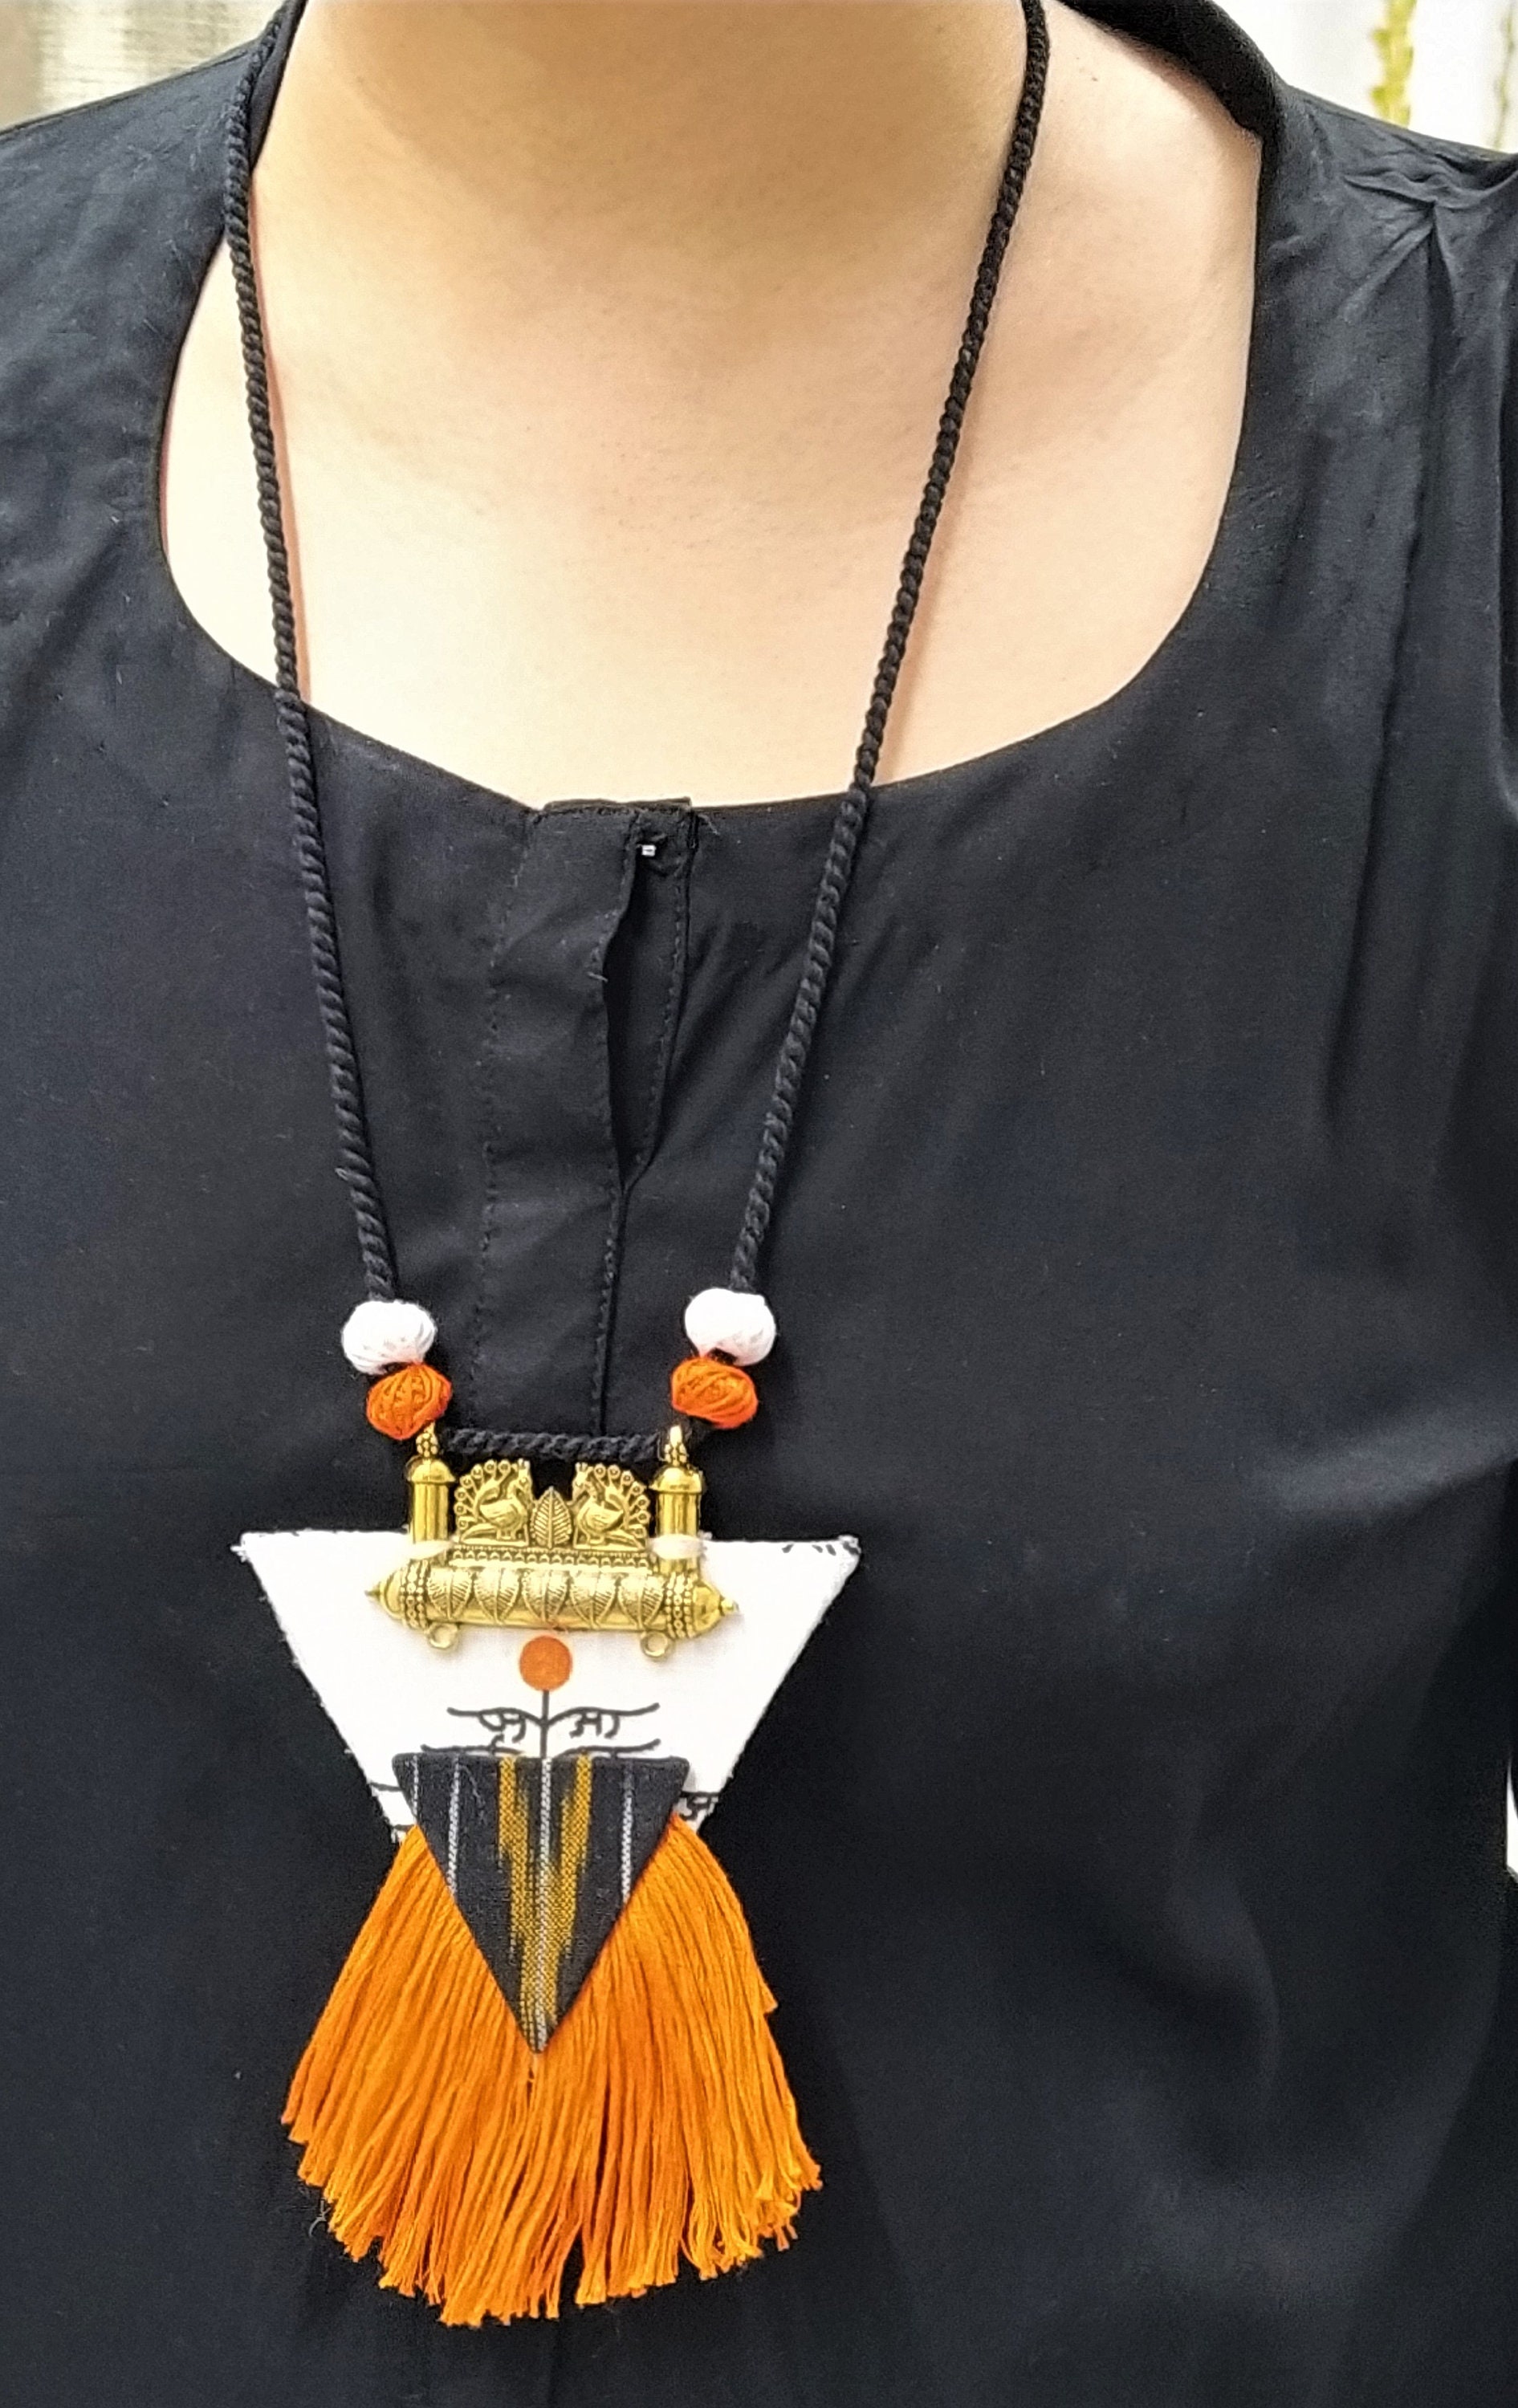 Banjara Necklace Tribal Jewelry Ethnic Necklace Indian | Etsy